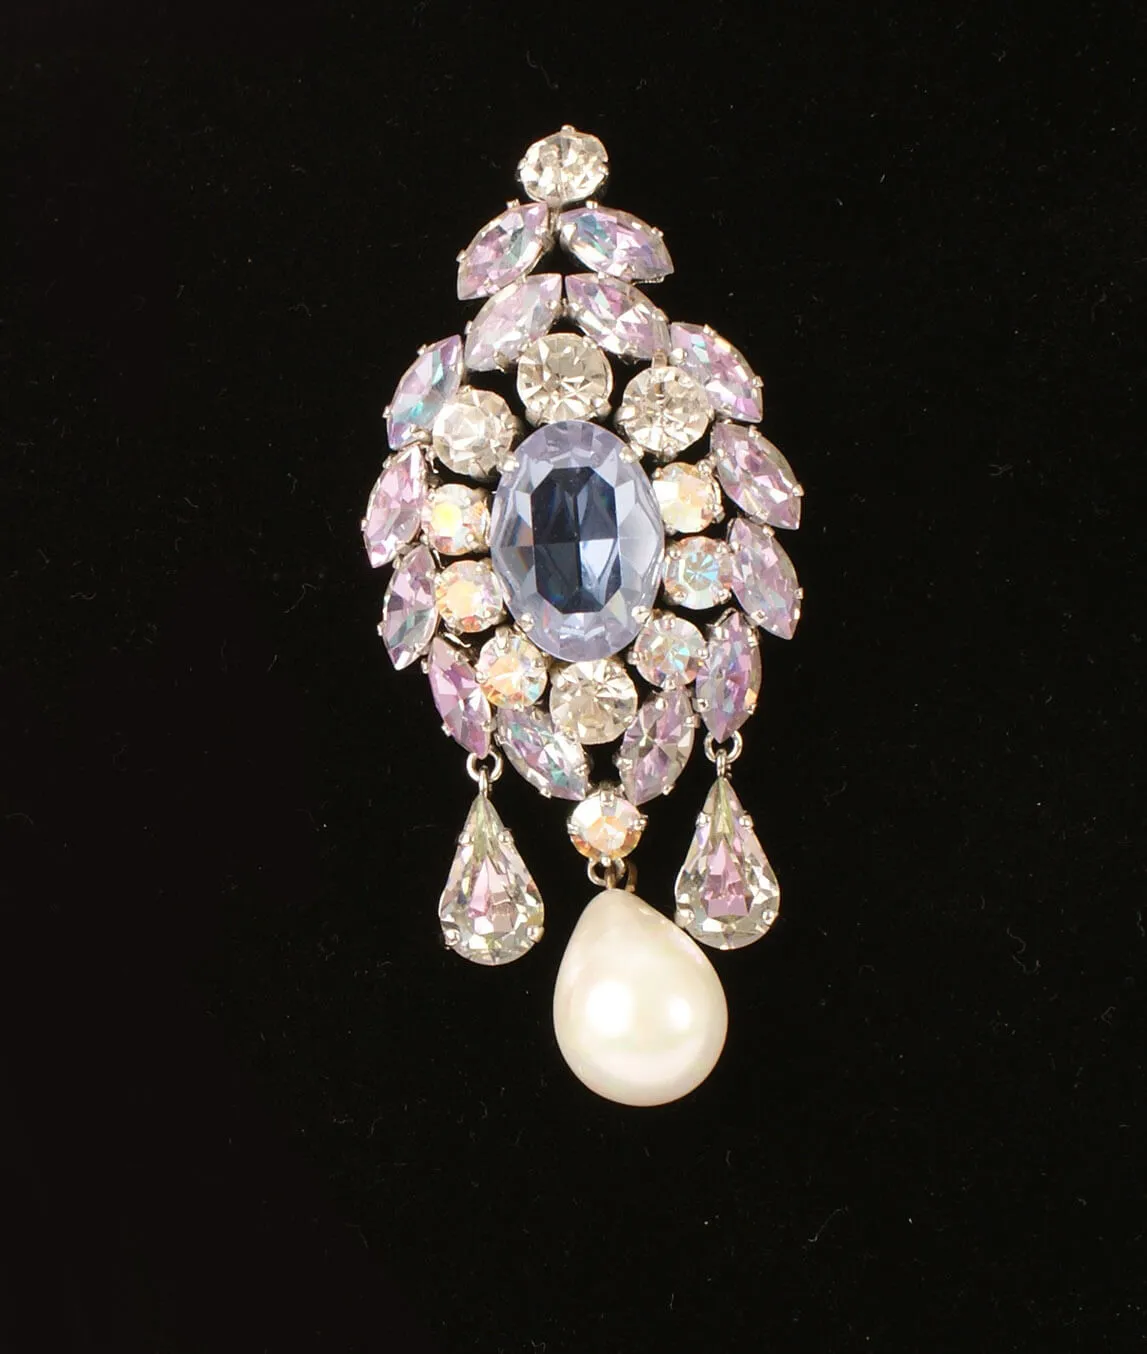 Vintage Dior crystal and pearl brooch on black